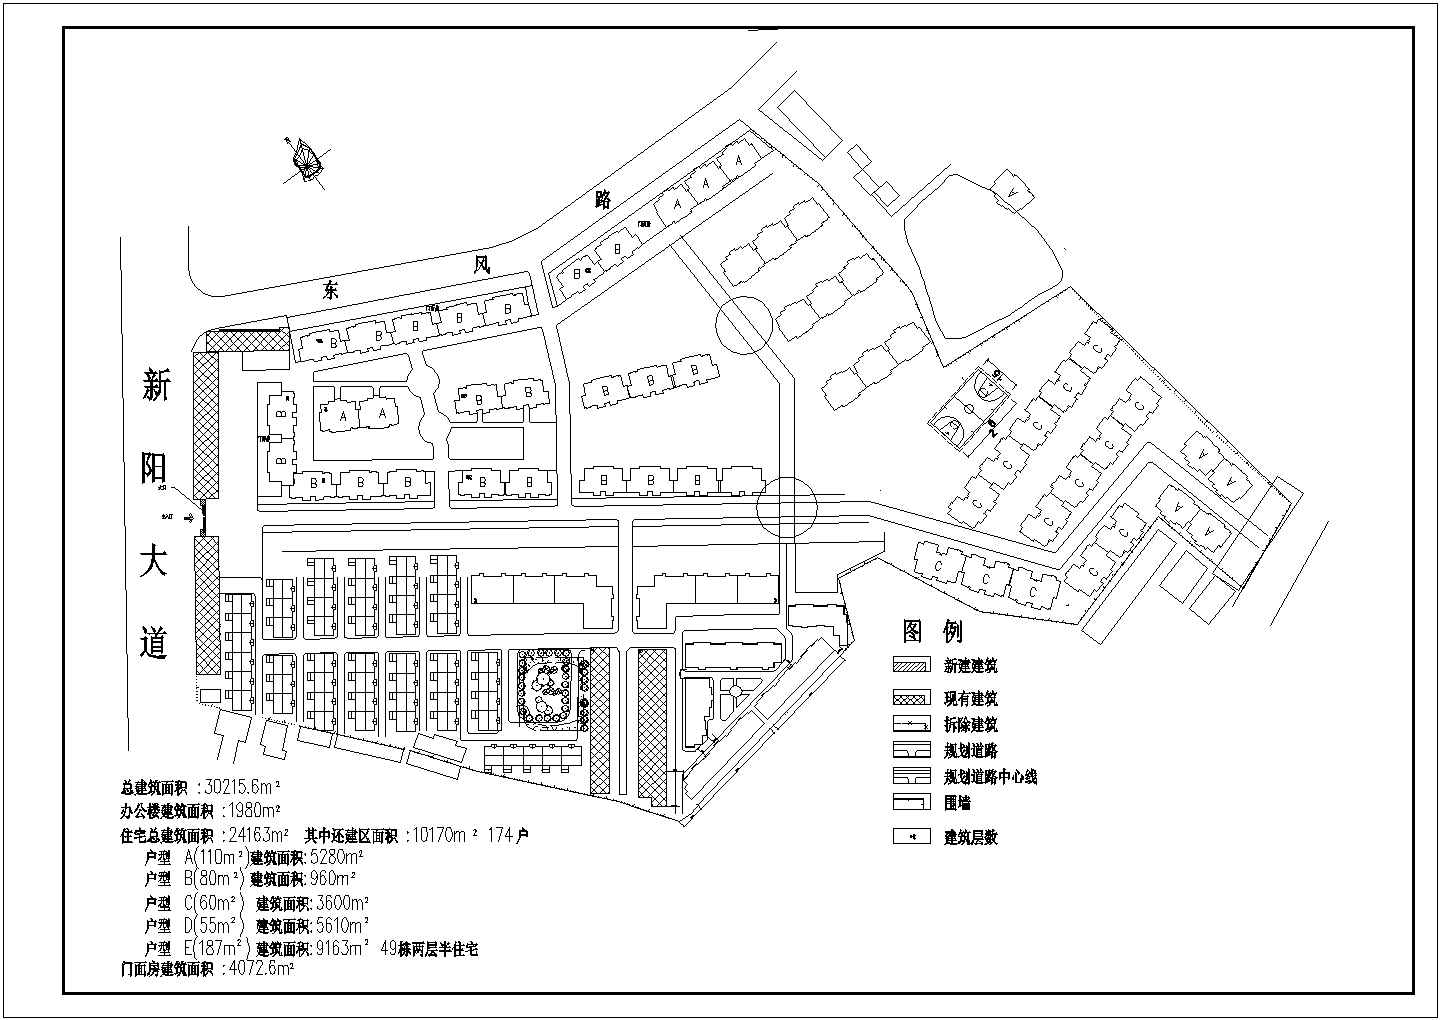 【武汉市】新洲区某工业基地规划总图